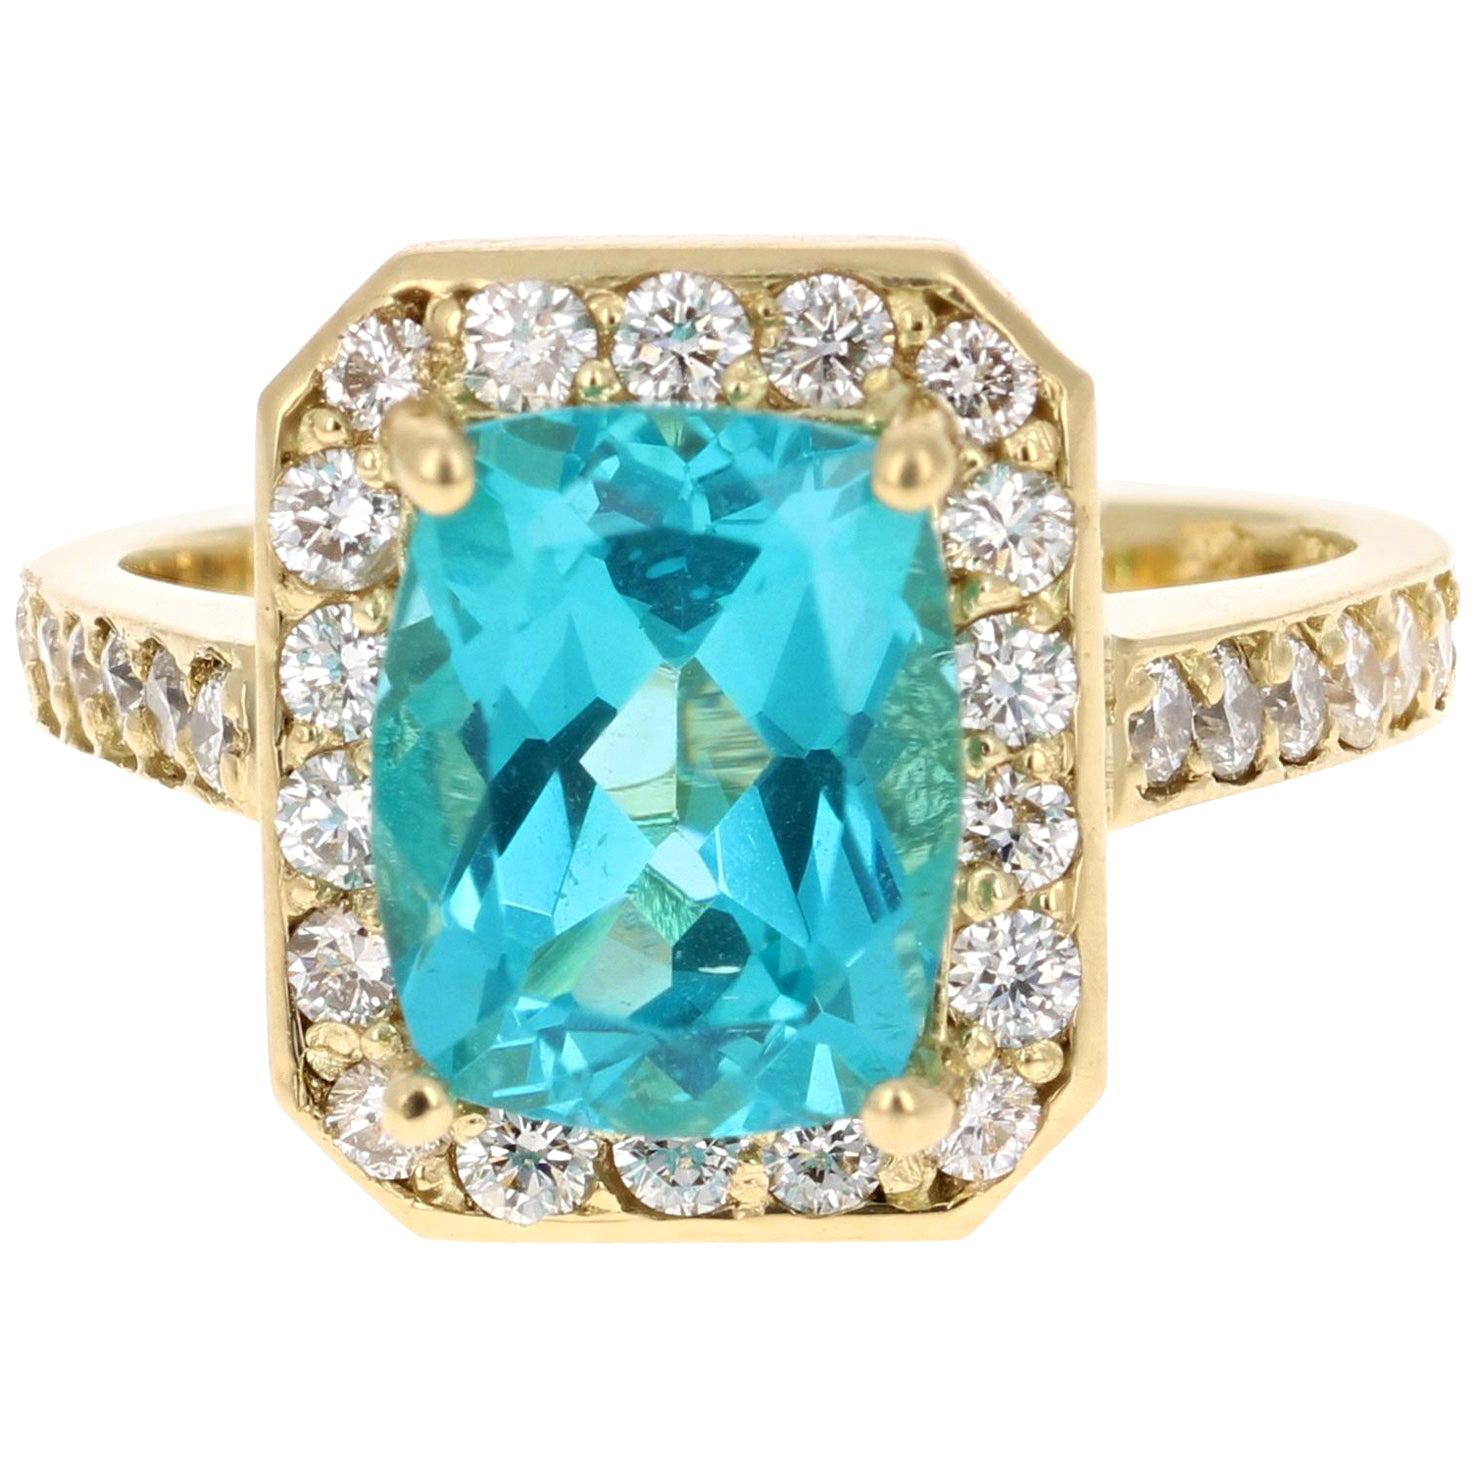 4.13 Carat Cushion Cut Apatite Diamond Ring 18 Karat Yellow Gold Engagement Ring For Sale